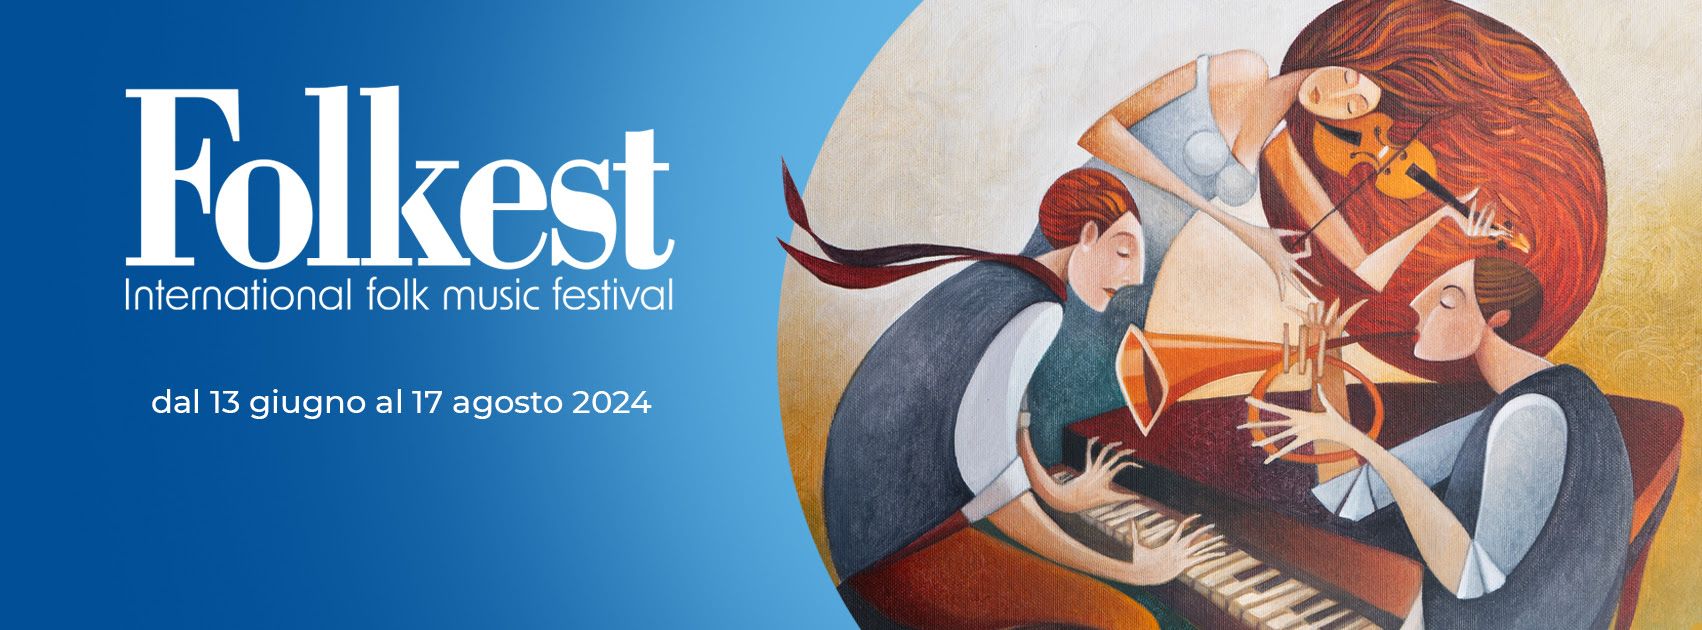 1 giugno - 17 agosto  Folkest 2024:  il festival curioso del mondo